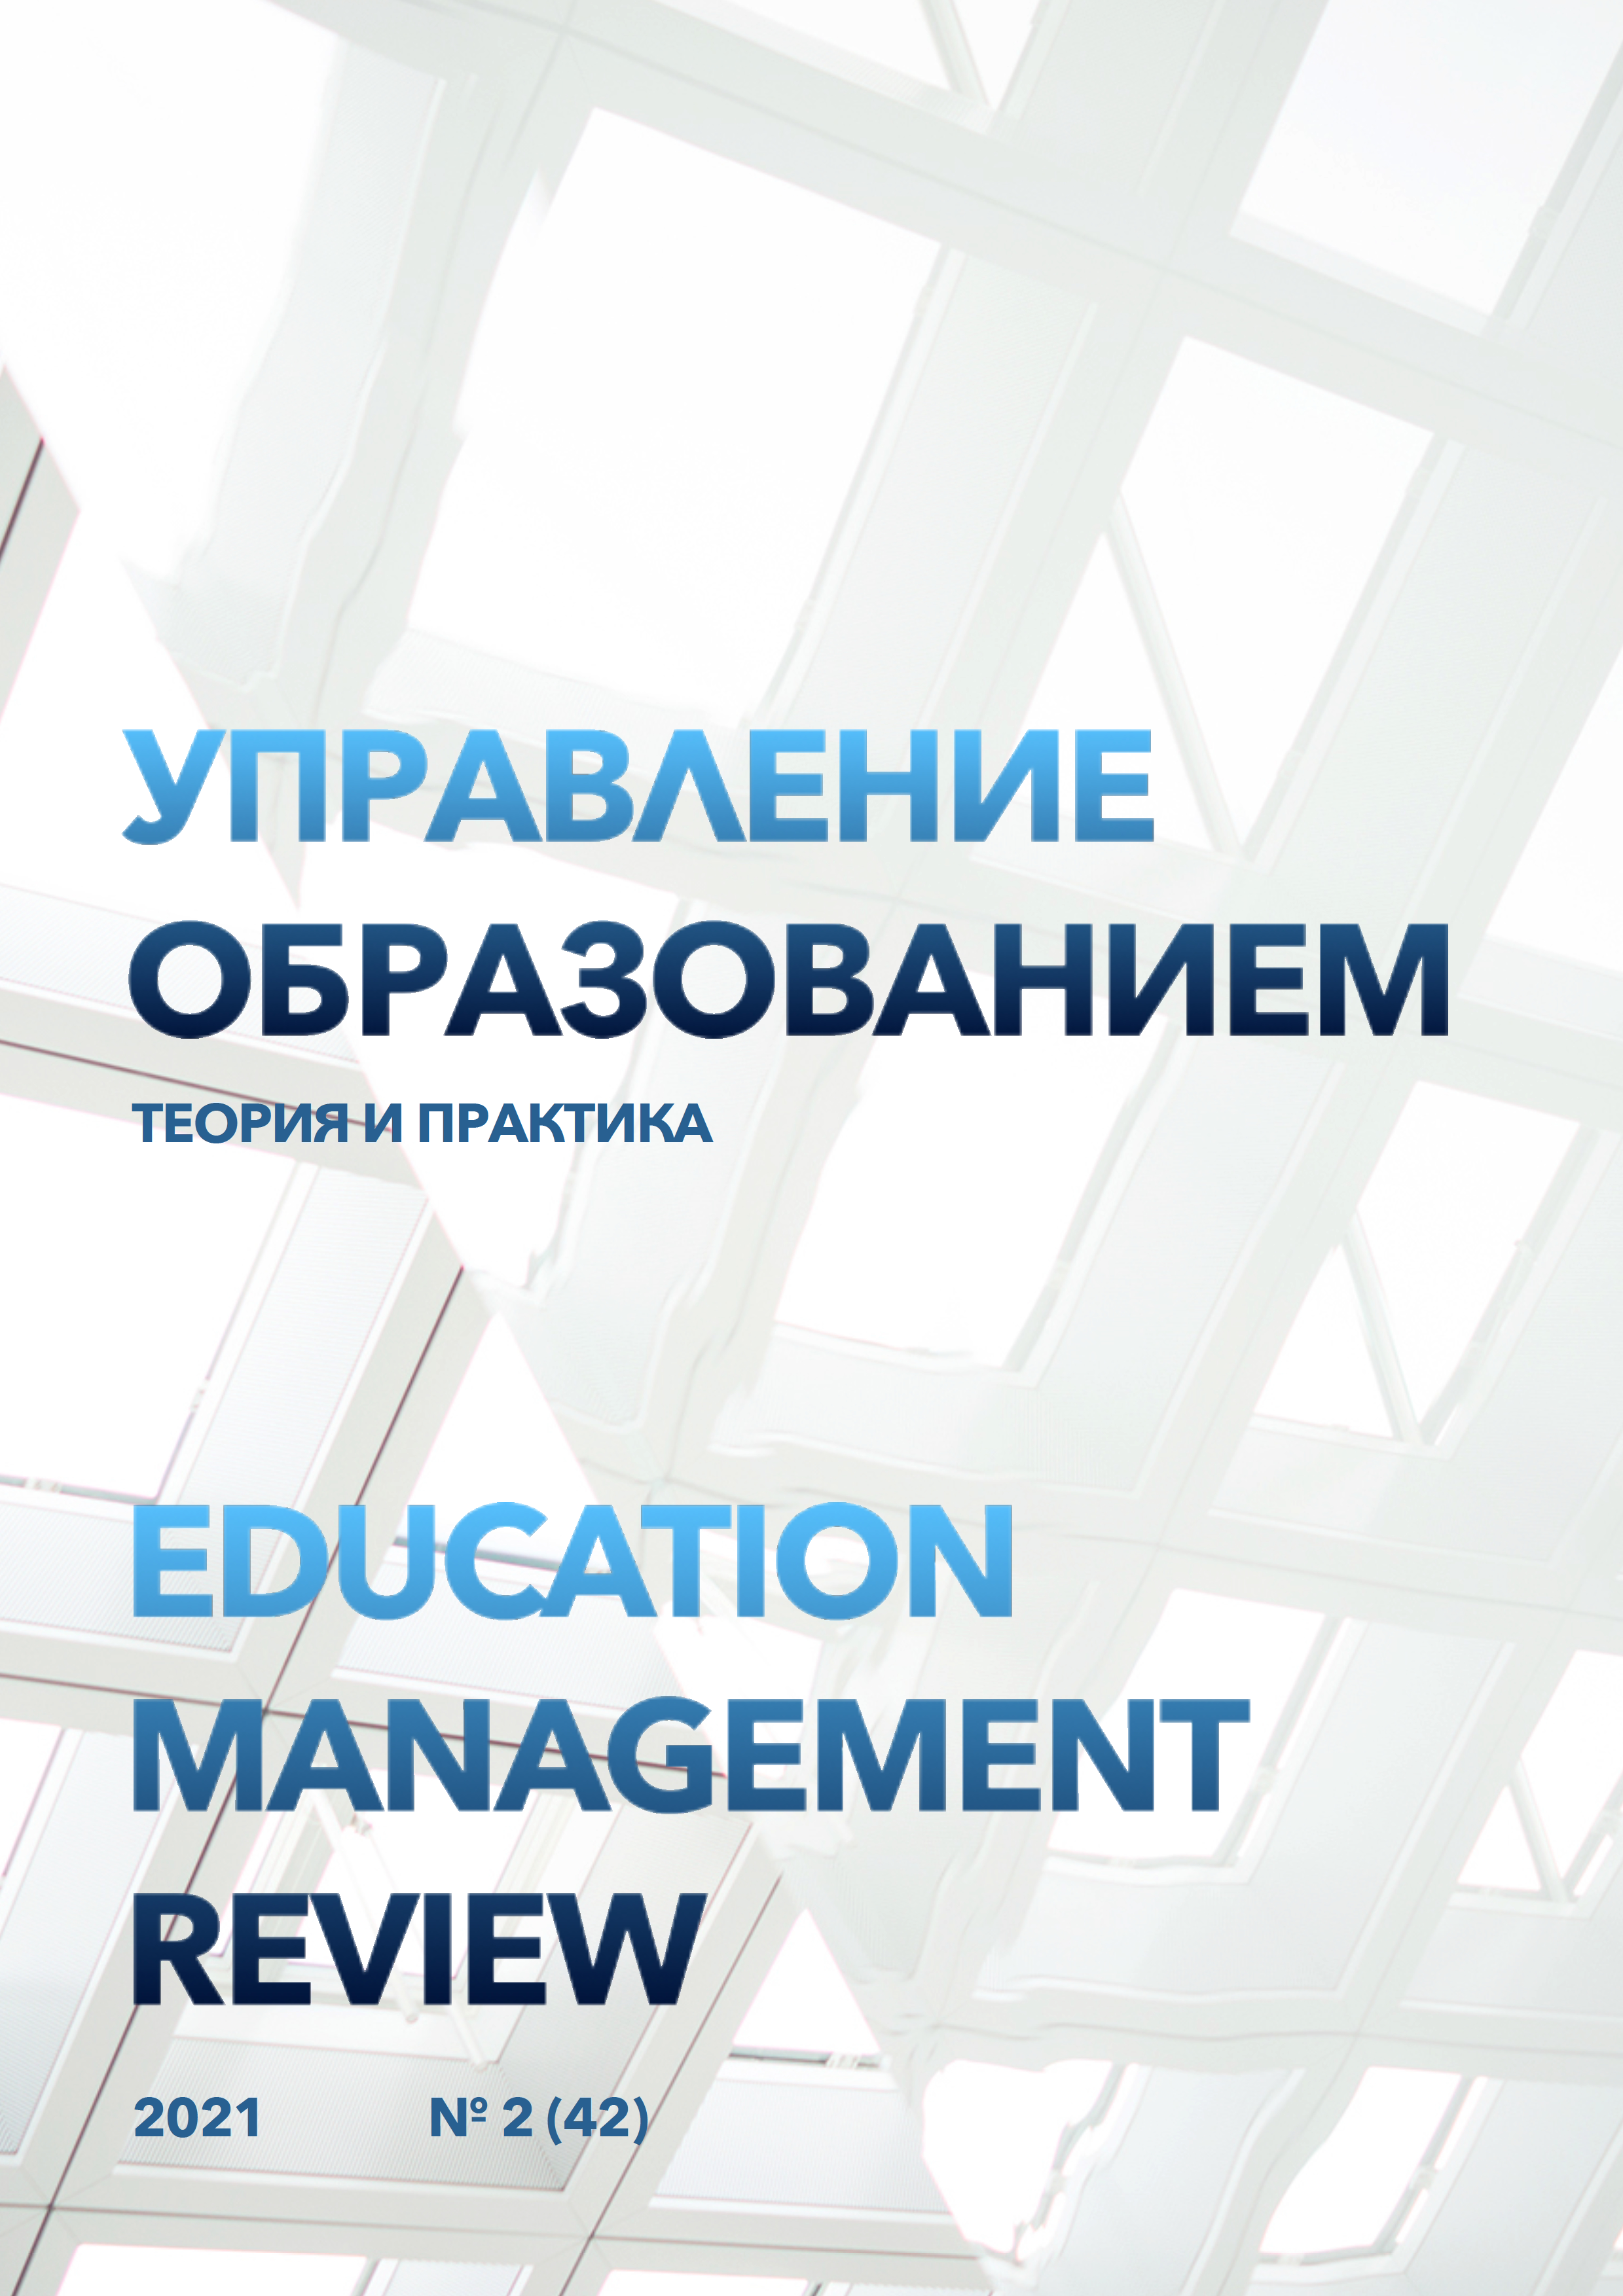 					View Vol. 11 No. 2 (2021): Education management review, №2 (42), 2021
				